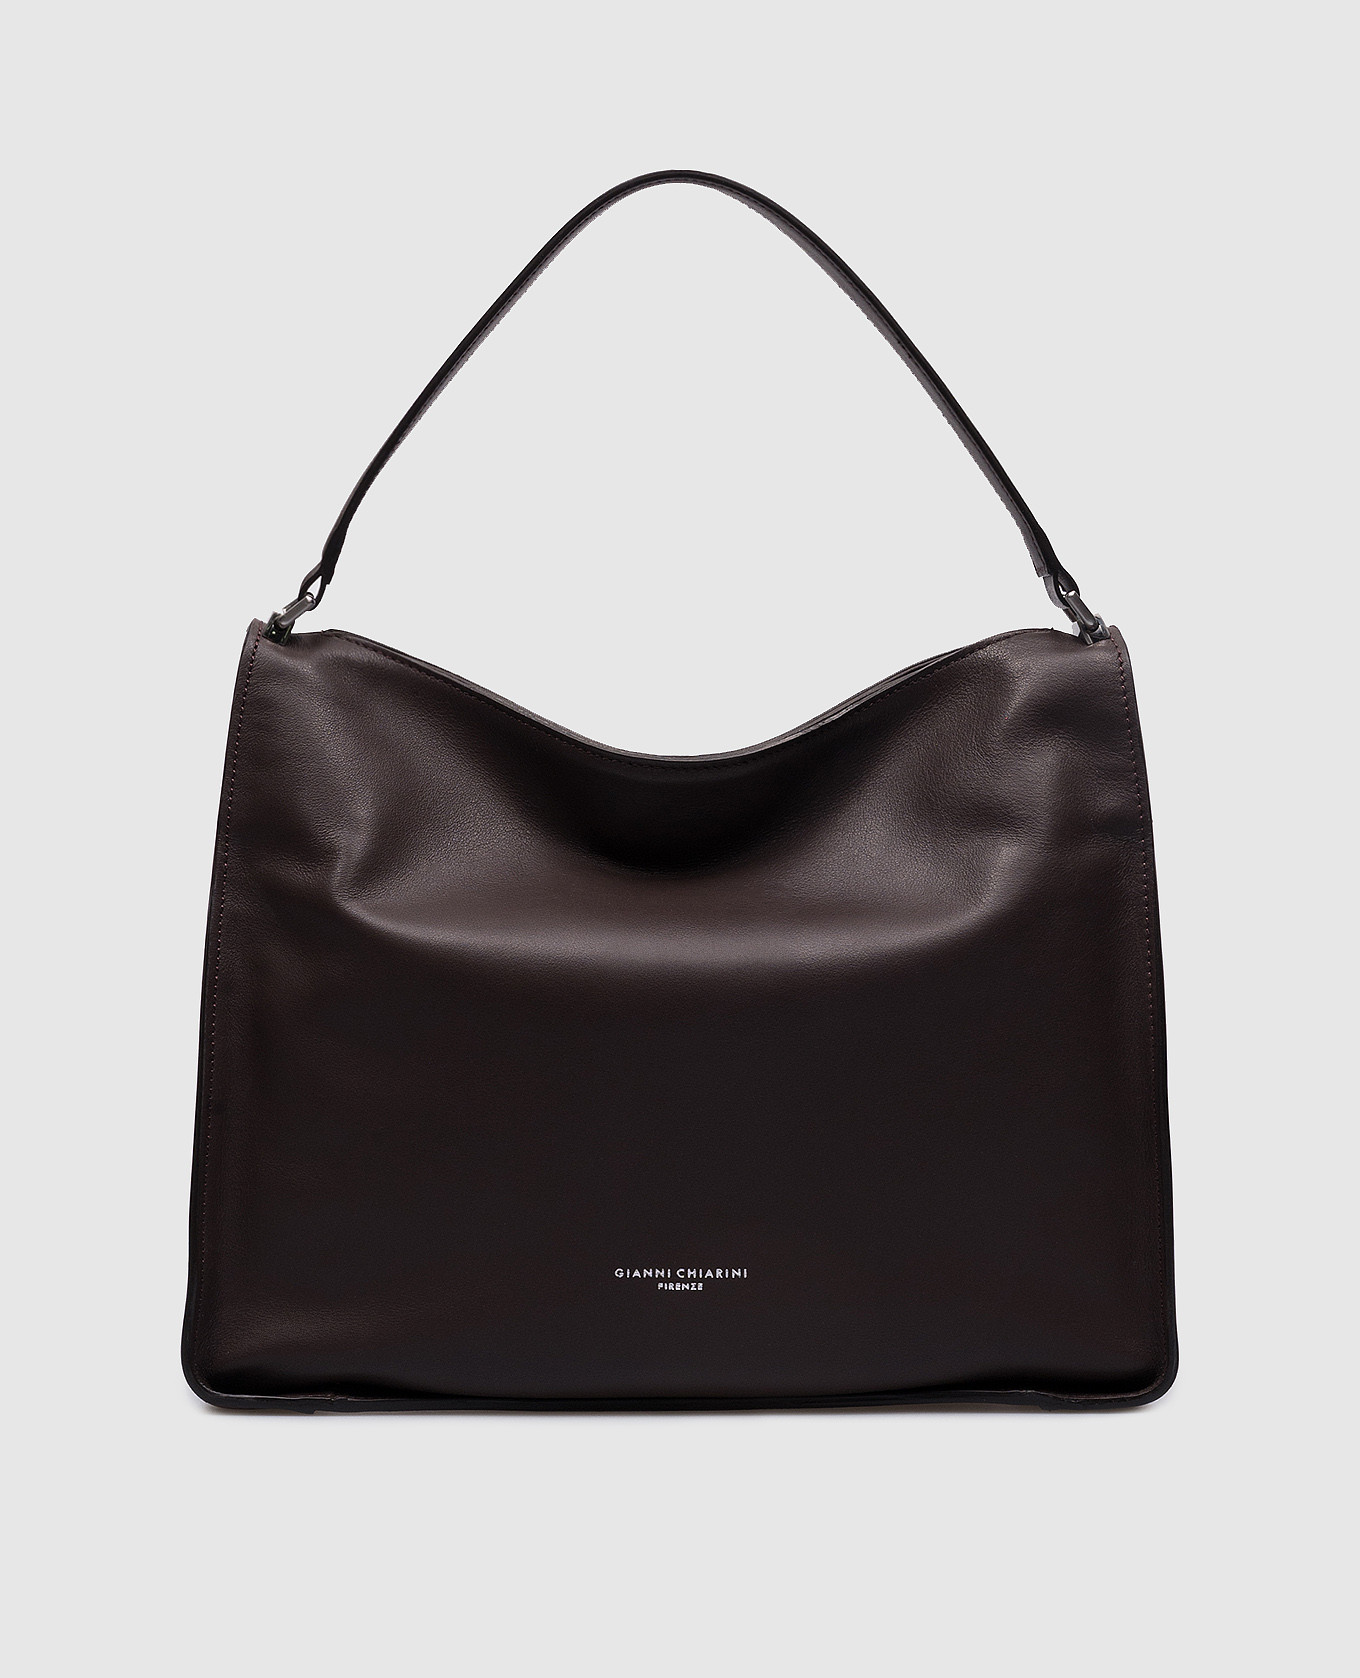 Rene brown leather bag